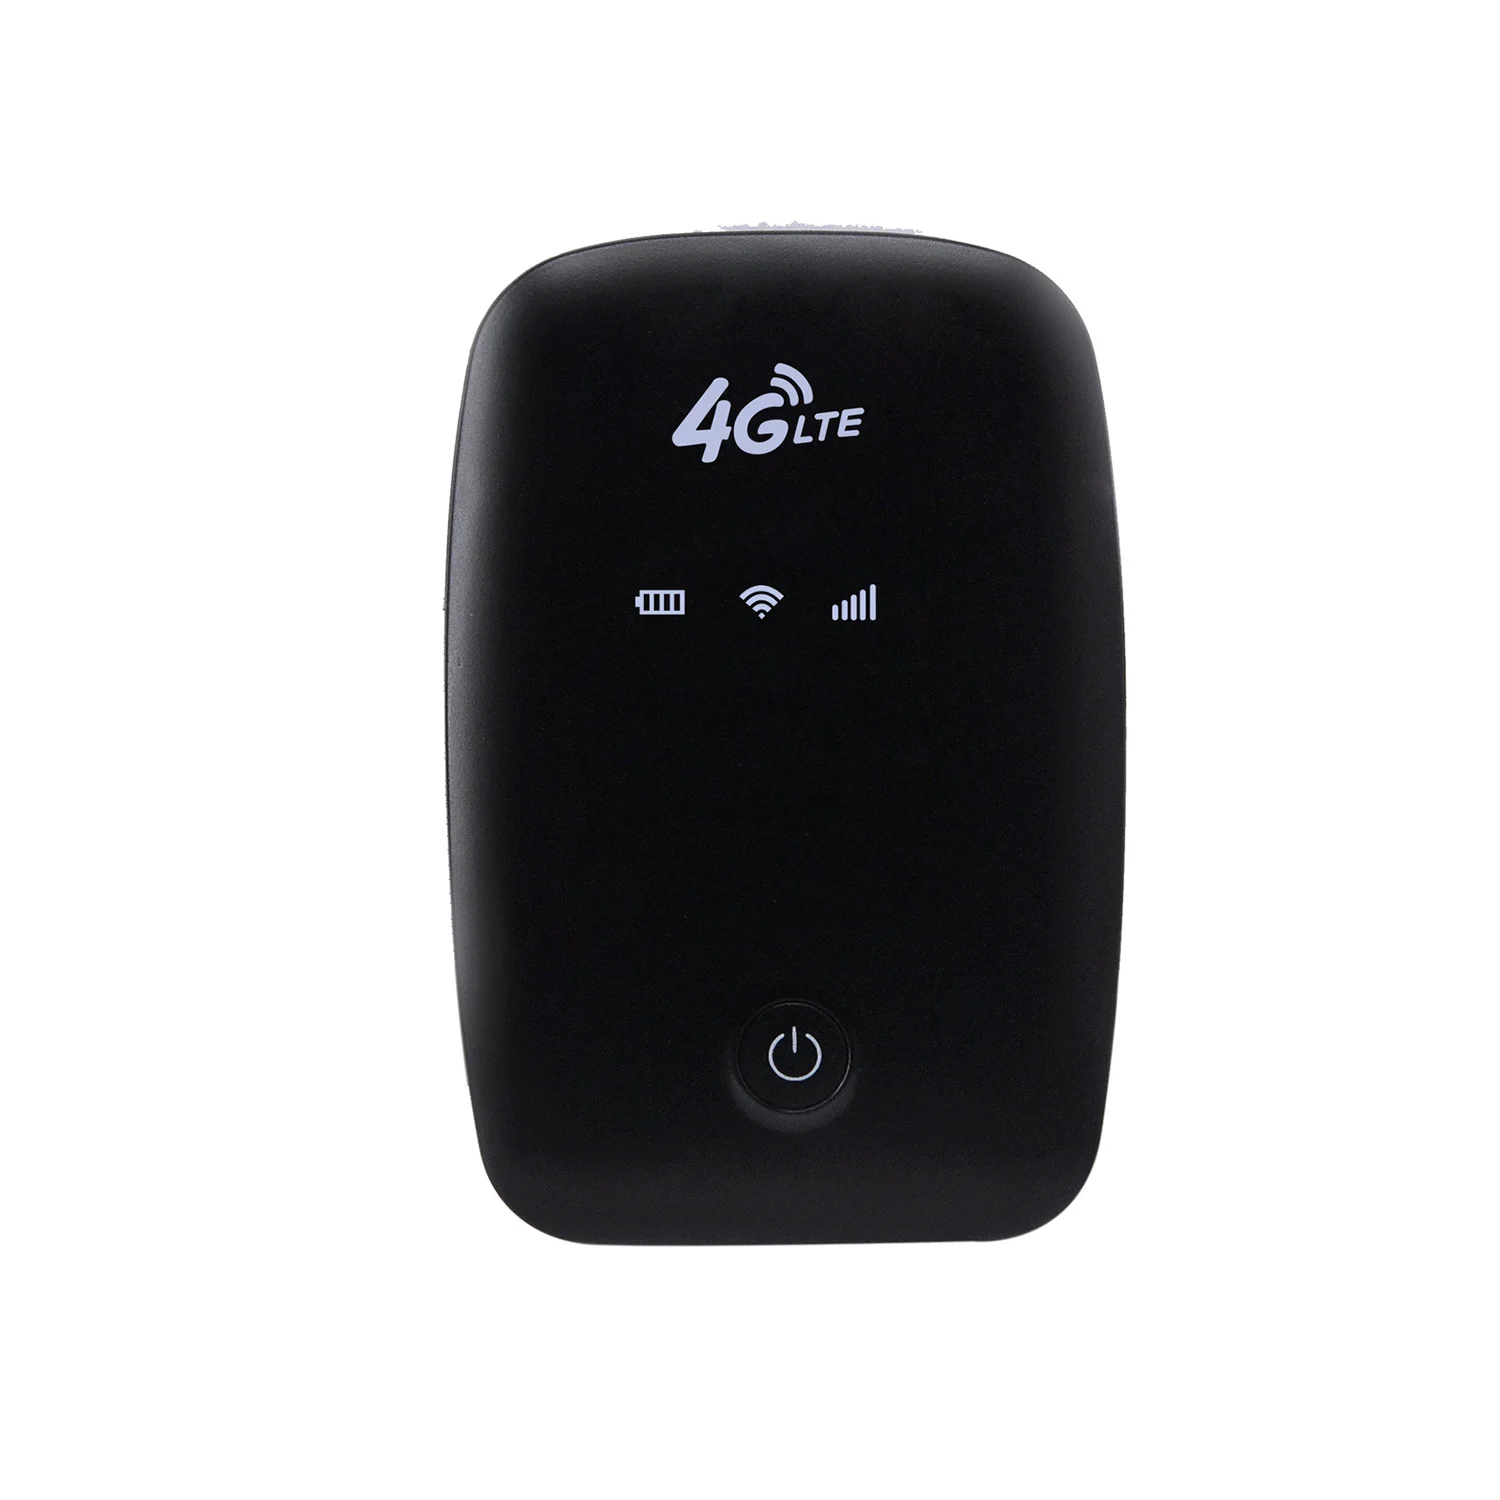 PPYY новый-MF903-M3 4 г Wi-Fi маршрутизатор мини-маршрутизатор 3g 4 г Lte беспроводной портативный карманный Wifi мобильный точка доступа автомобиль Wi-Fi